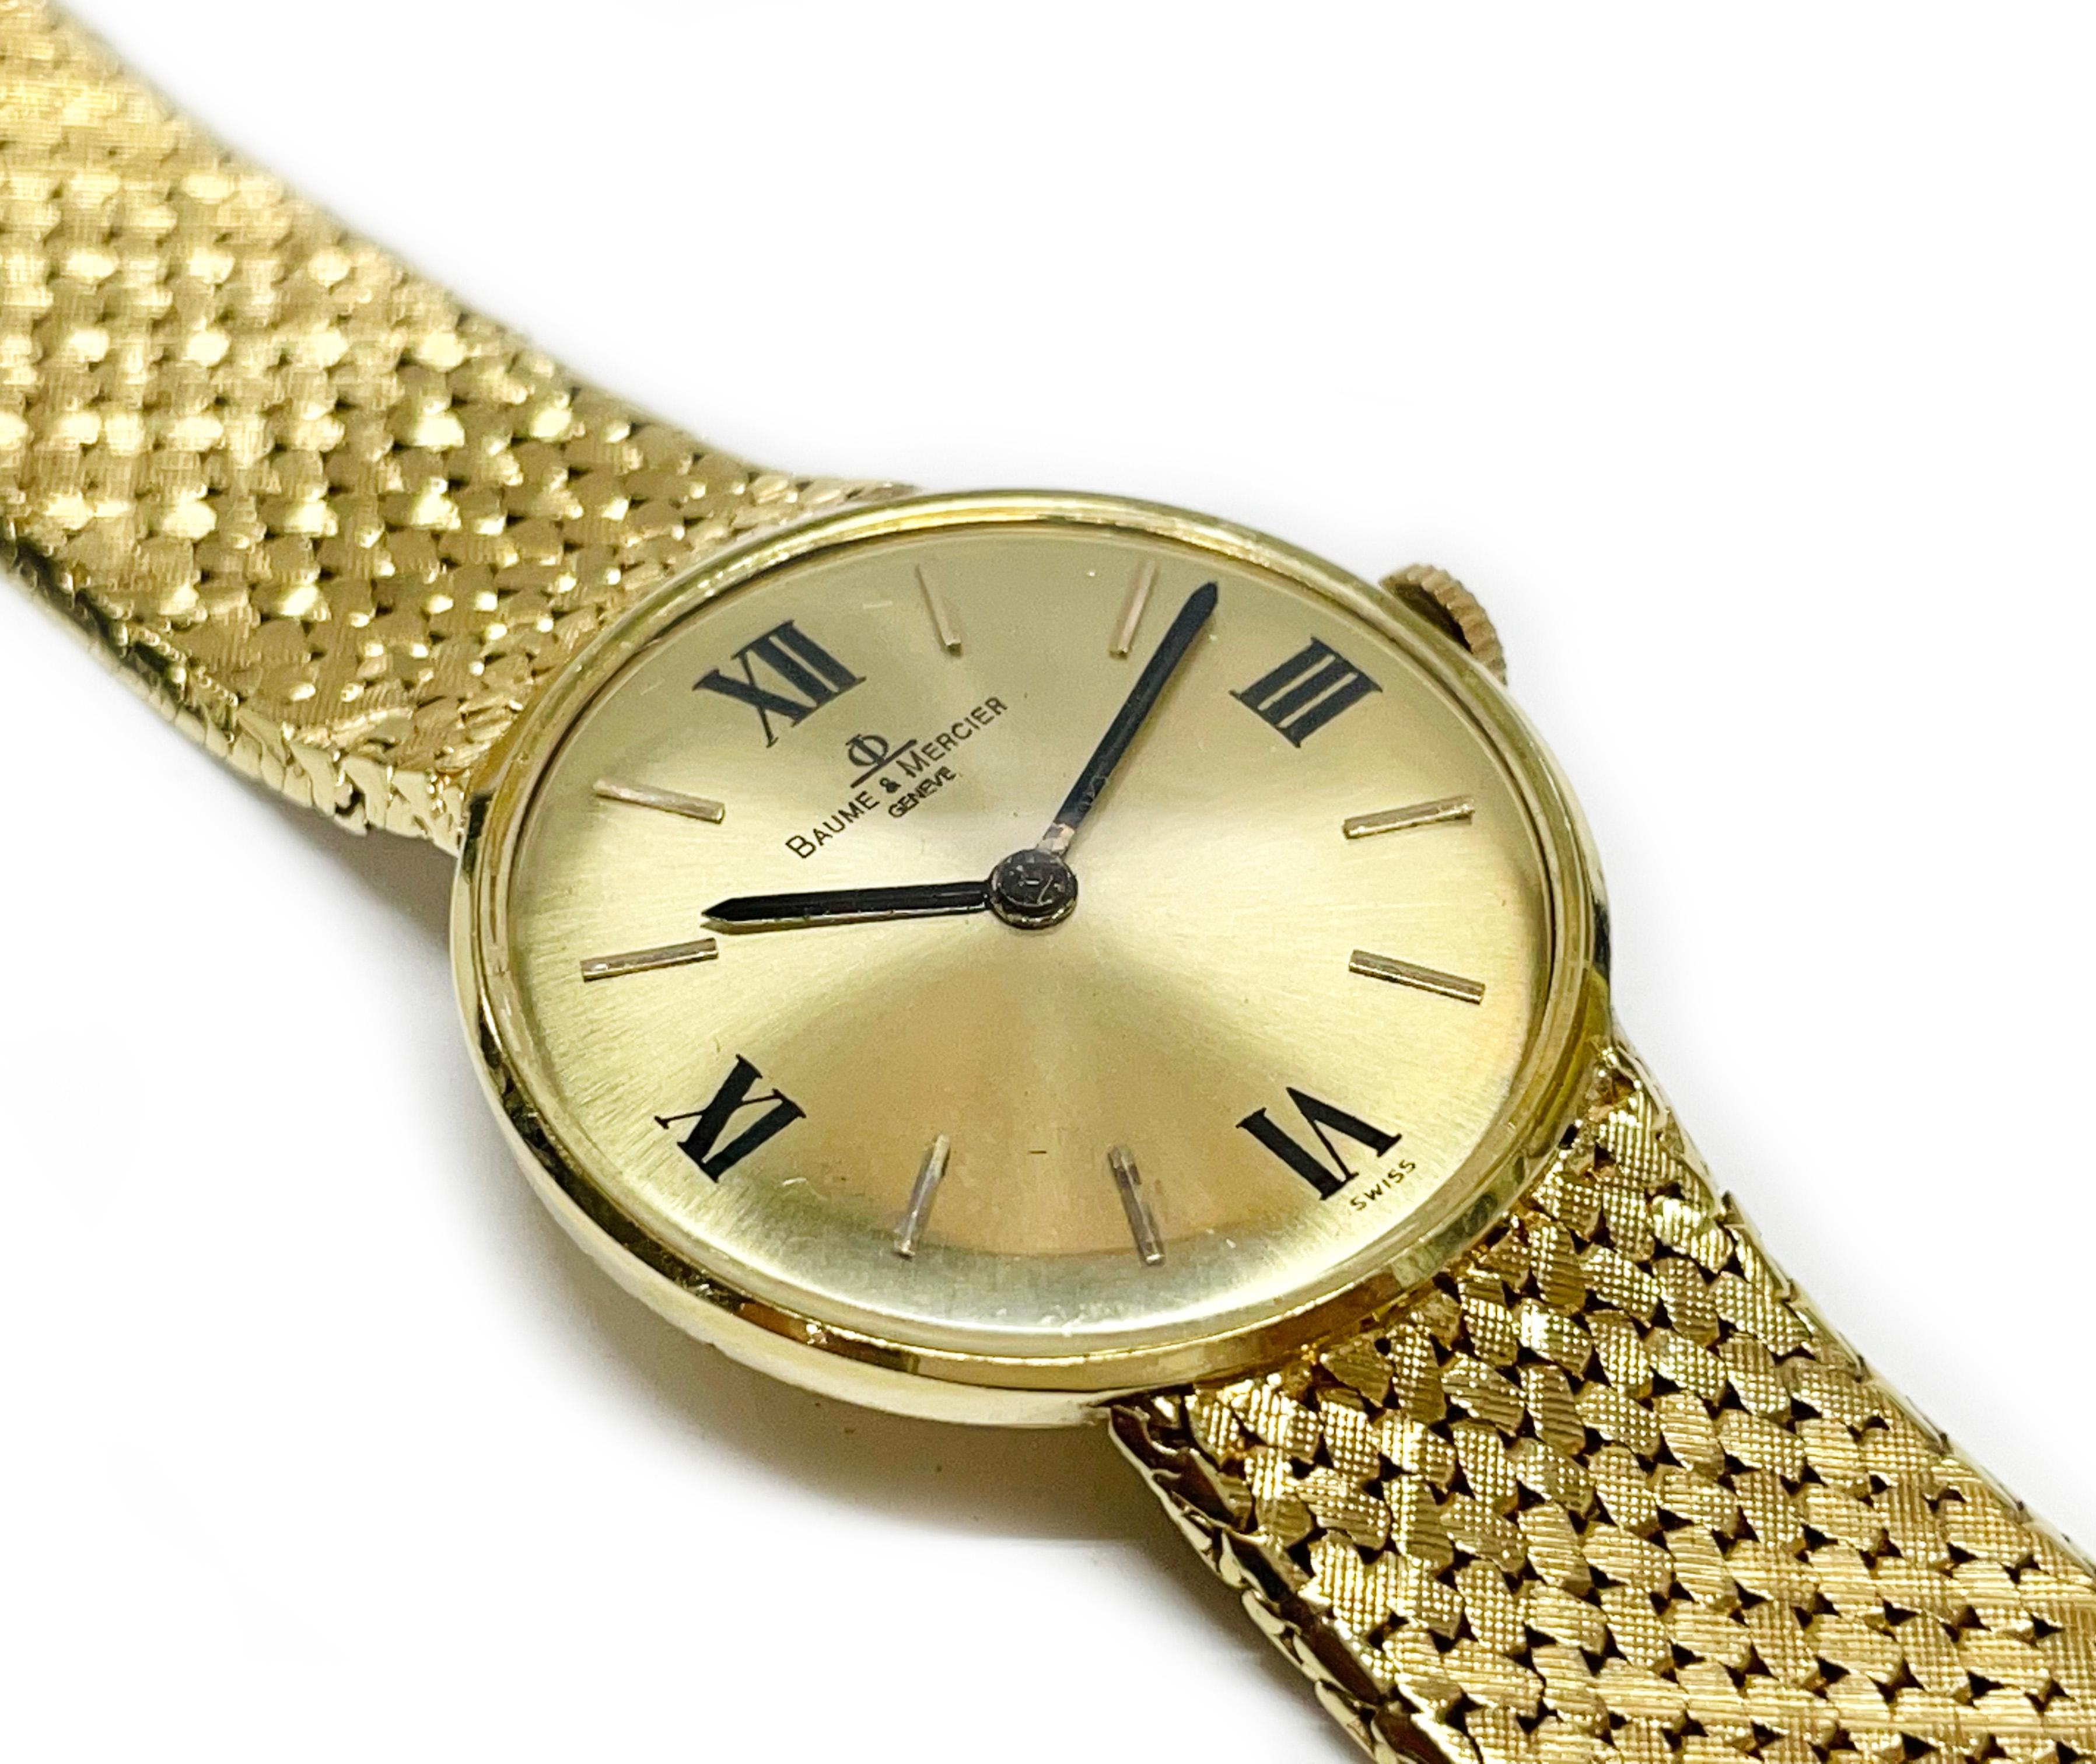 Montre-bracelet en or jaune 14 carats de Baume et Mercier. La montre présente un cadran rond en or, des chiffres romains à douze, trois, six et neuf. La montre est dotée d'aiguilles des heures et des minutes de type bâton. Le bracelet est en maille